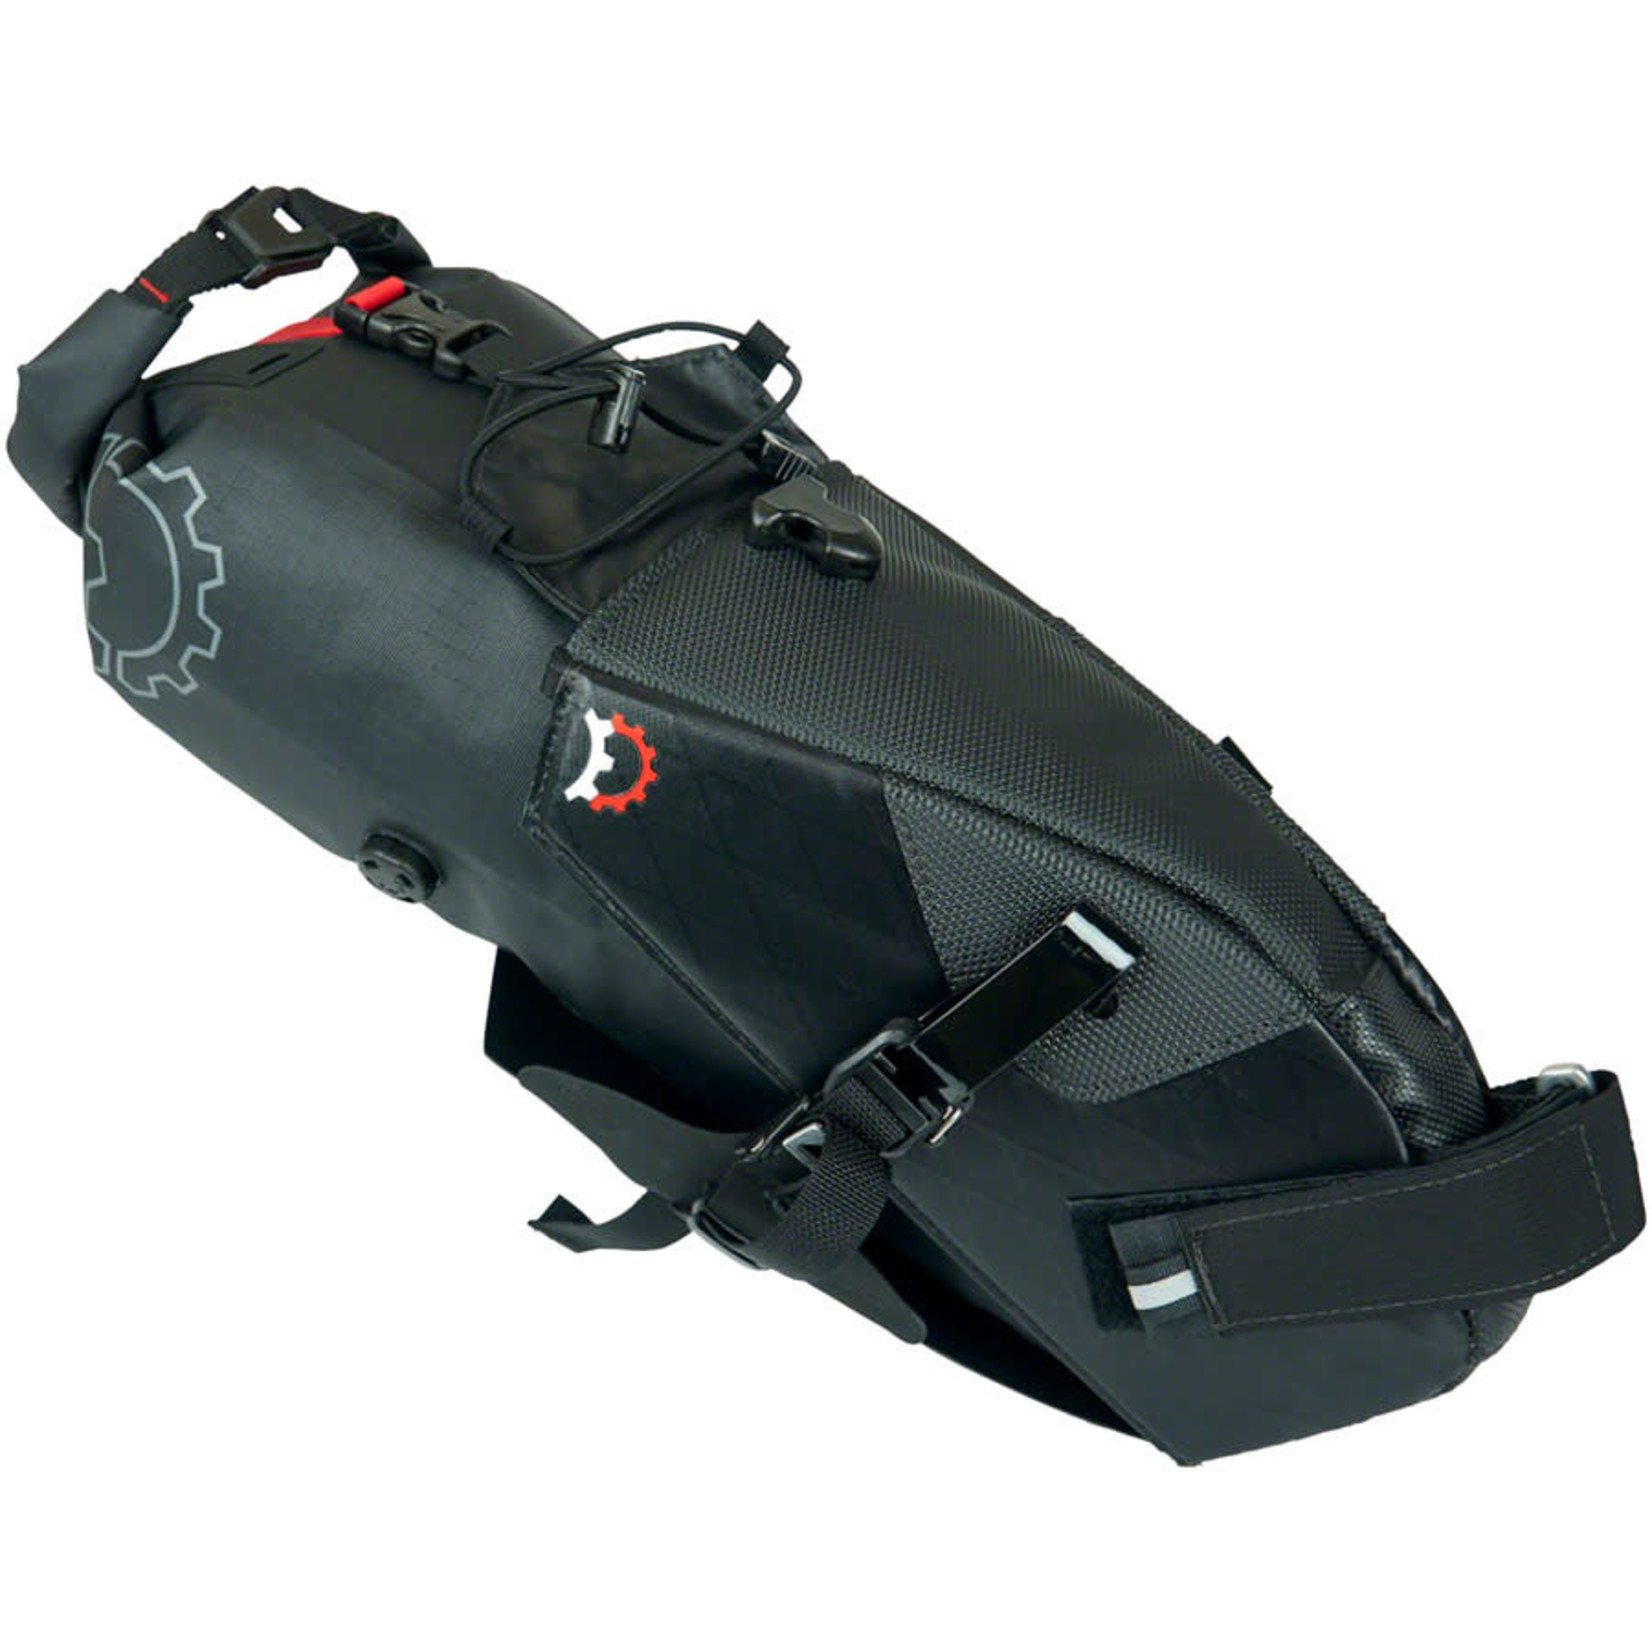 Revelate Designs Revelate Designs Terrapin Seat Bag - 8L, Black